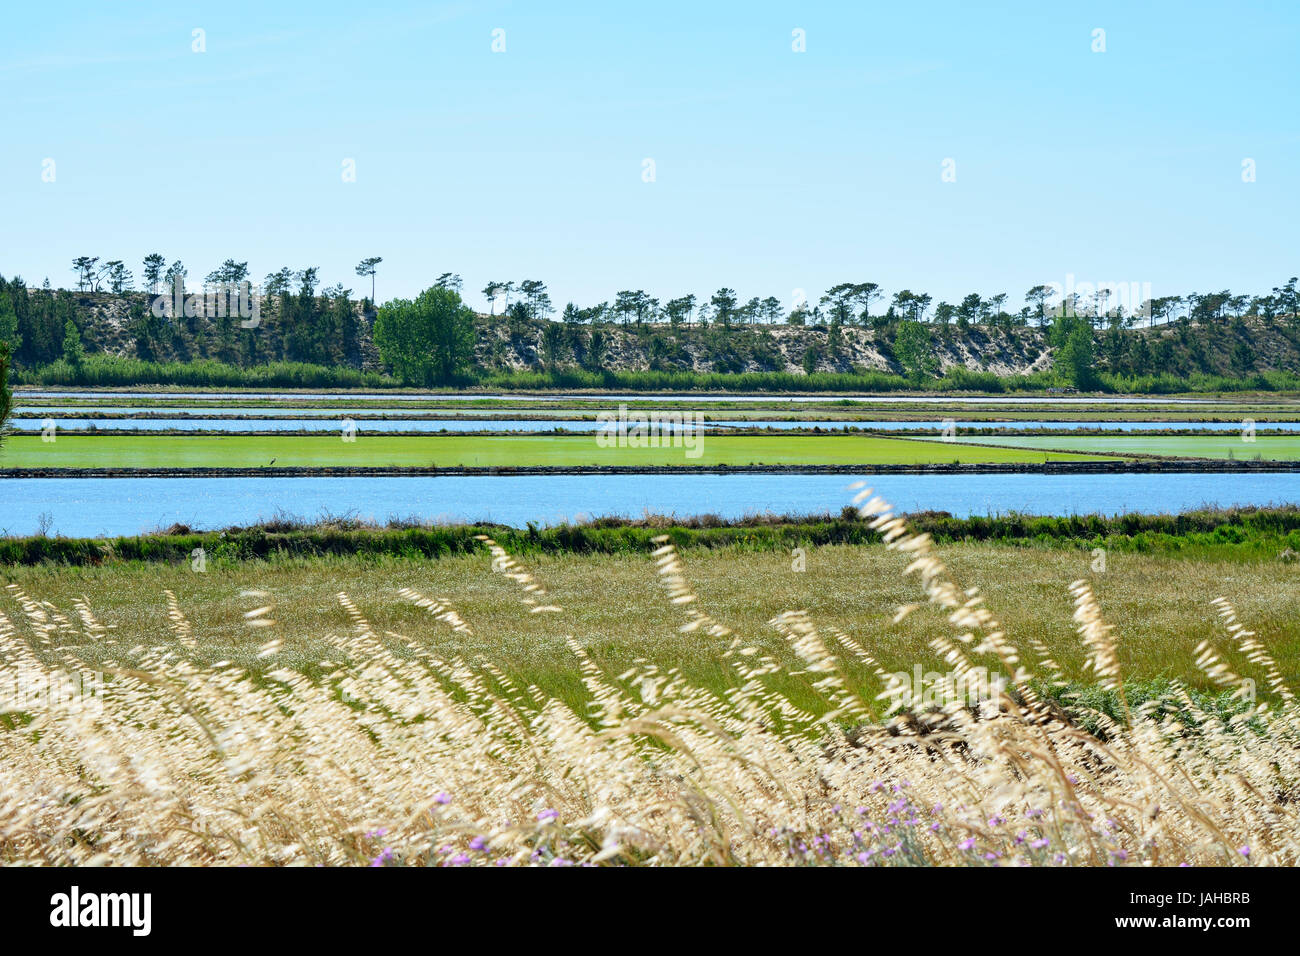 Los campos de arroz en comporta, Alentejo, Portugal Foto de stock